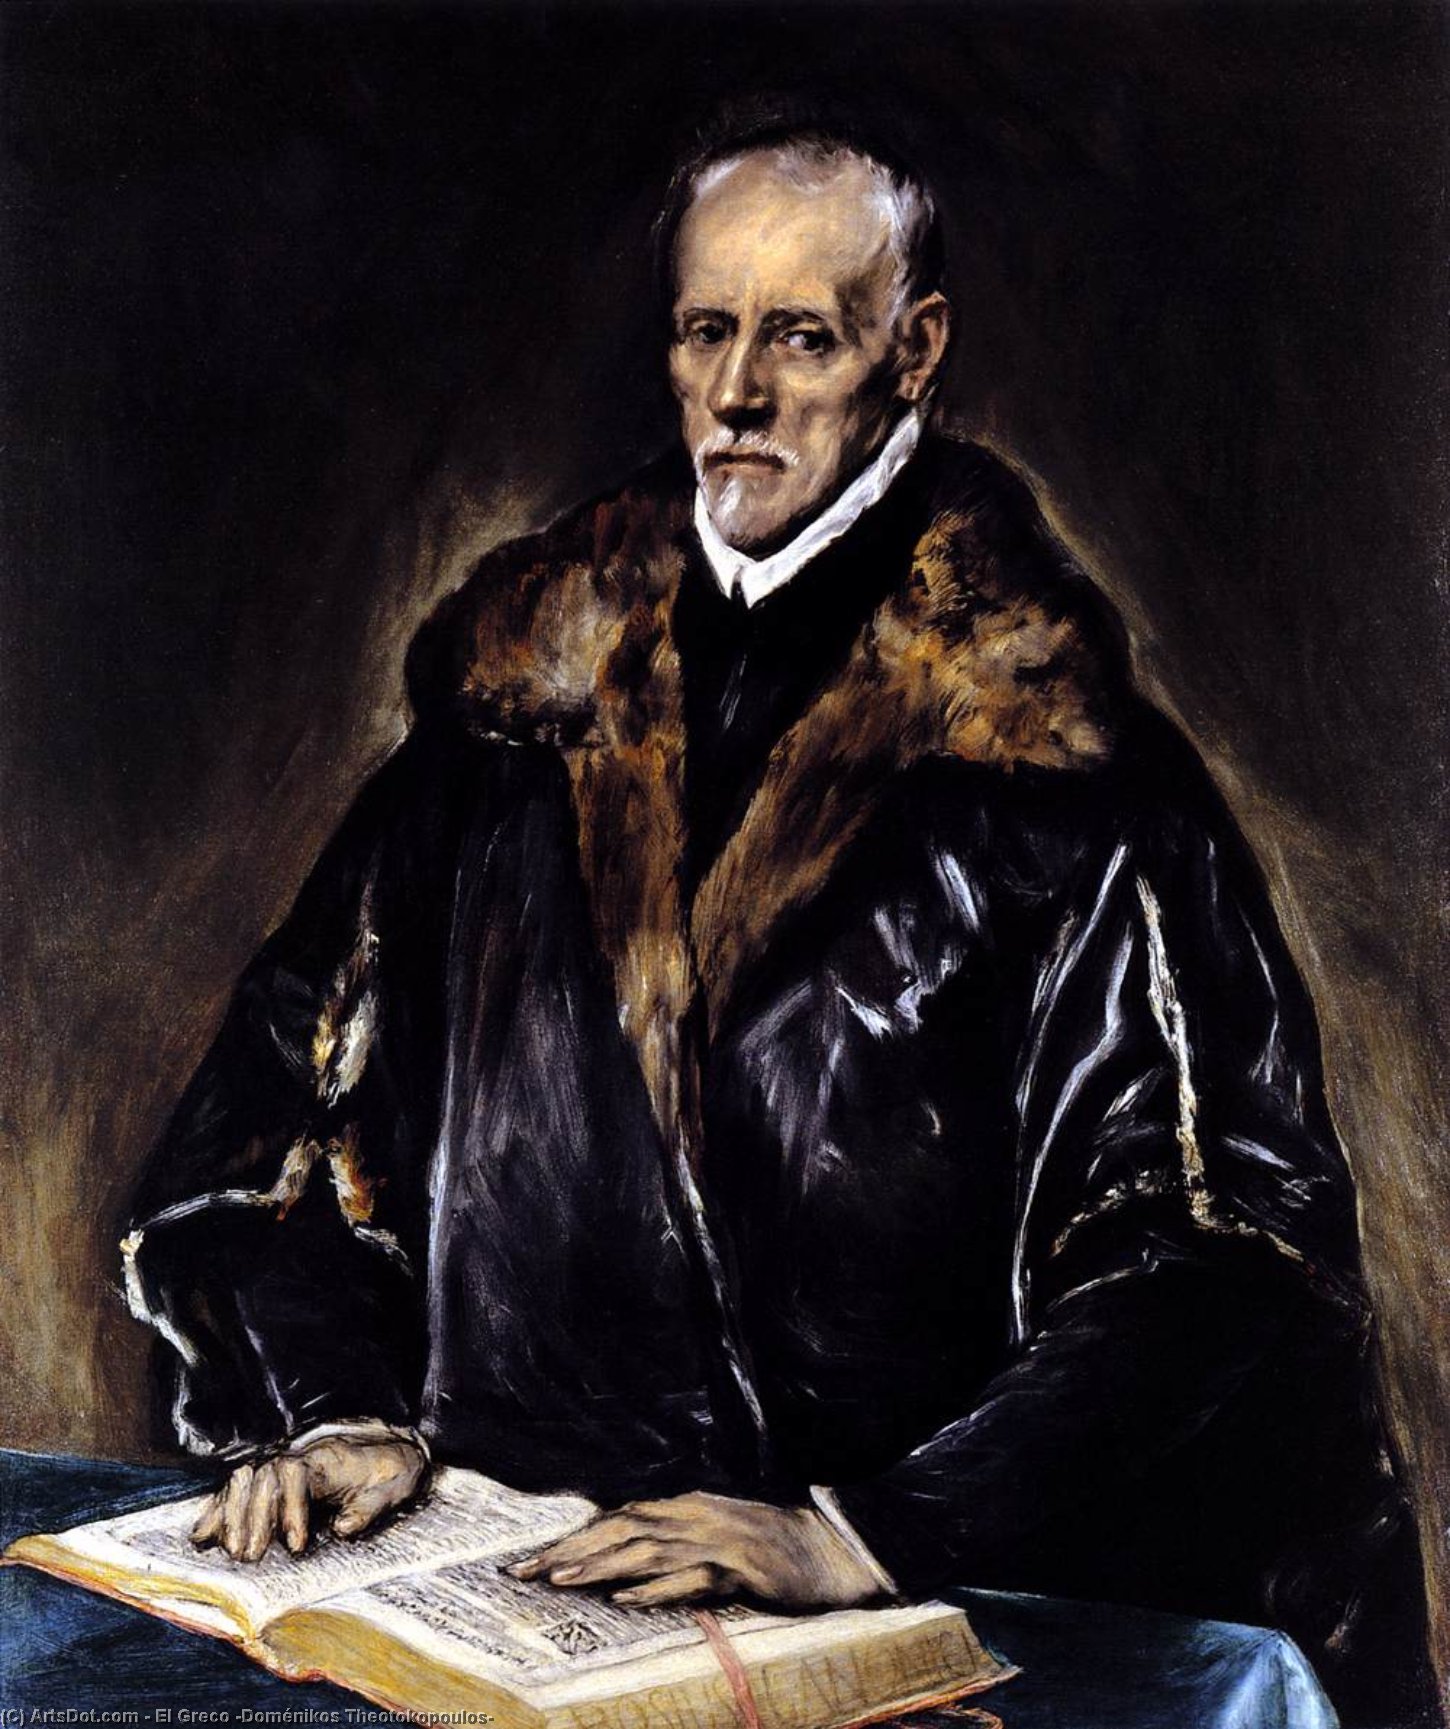 WikiOO.org - Энциклопедия изобразительного искусства - Живопись, Картины  El Greco (Doménikos Theotokopoulos) - Святитель